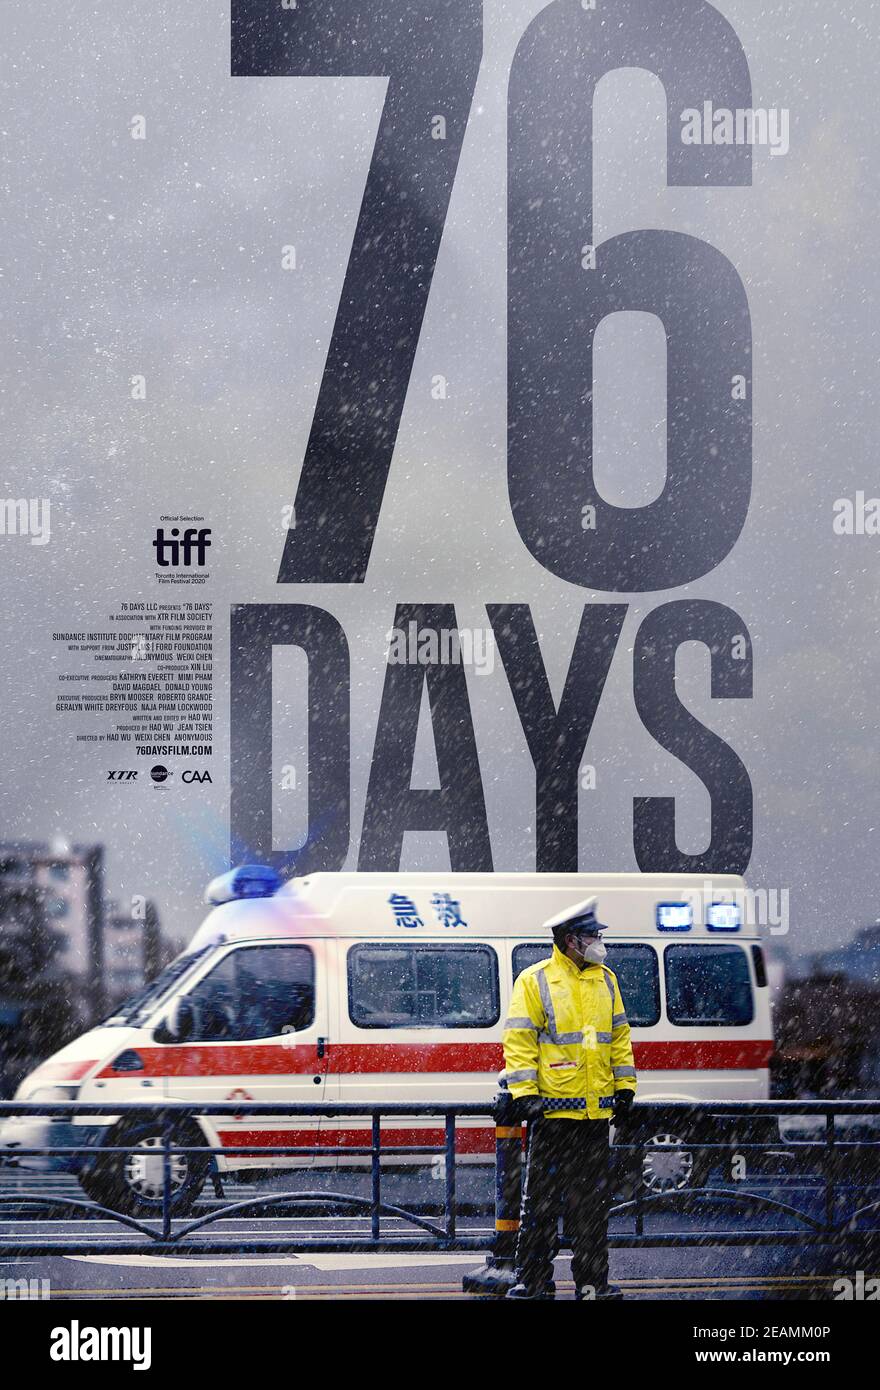 76 giorni (2020) regia di Weixi Chen e Hao Wu. Documentario sui pazienti e sui professionisti medici di prima linea che hanno combattuto la pandemia COVID-19 durante i primi giorni a Wuhan, in Cina. Foto Stock